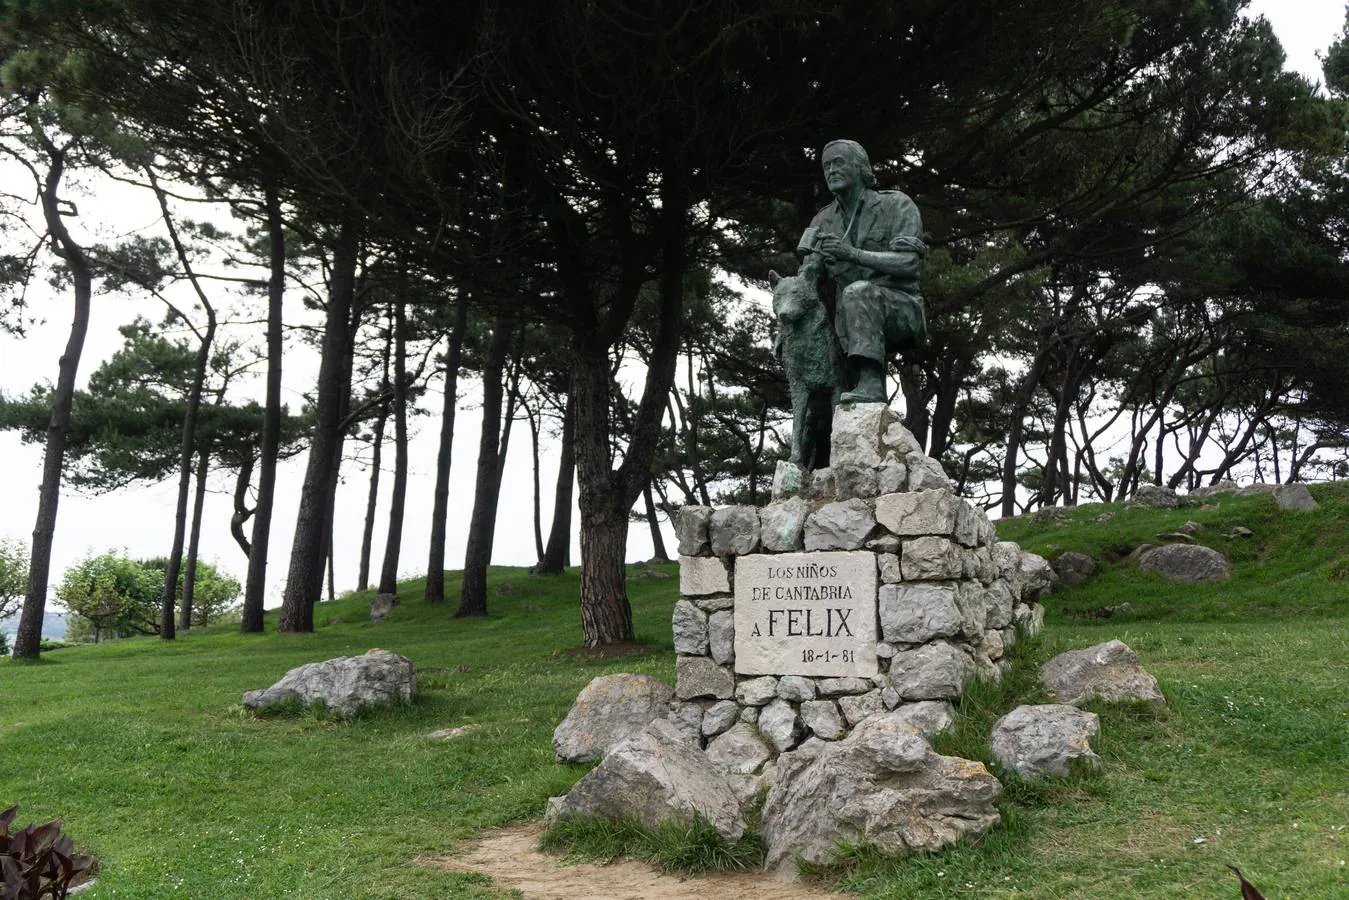 Monumento al naturalista Félix Rodríguez de la Fuente realizado en bronce por Ramón Ruiz Lloreda, 1981.